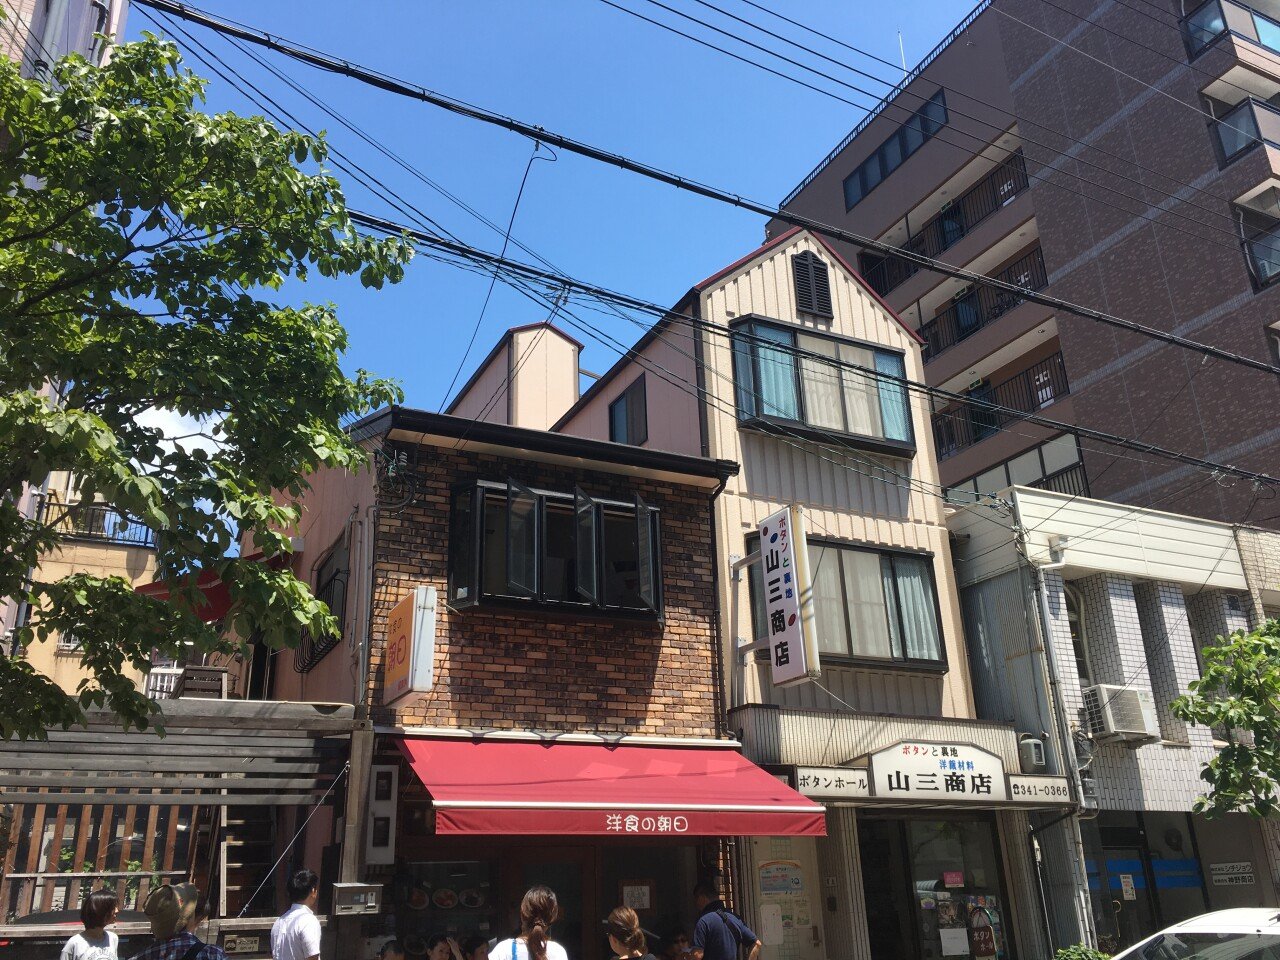 IMG_5251.JPG 간사이(교토,오사카,고베,나라)지역 내가 가본 맛집)(1)